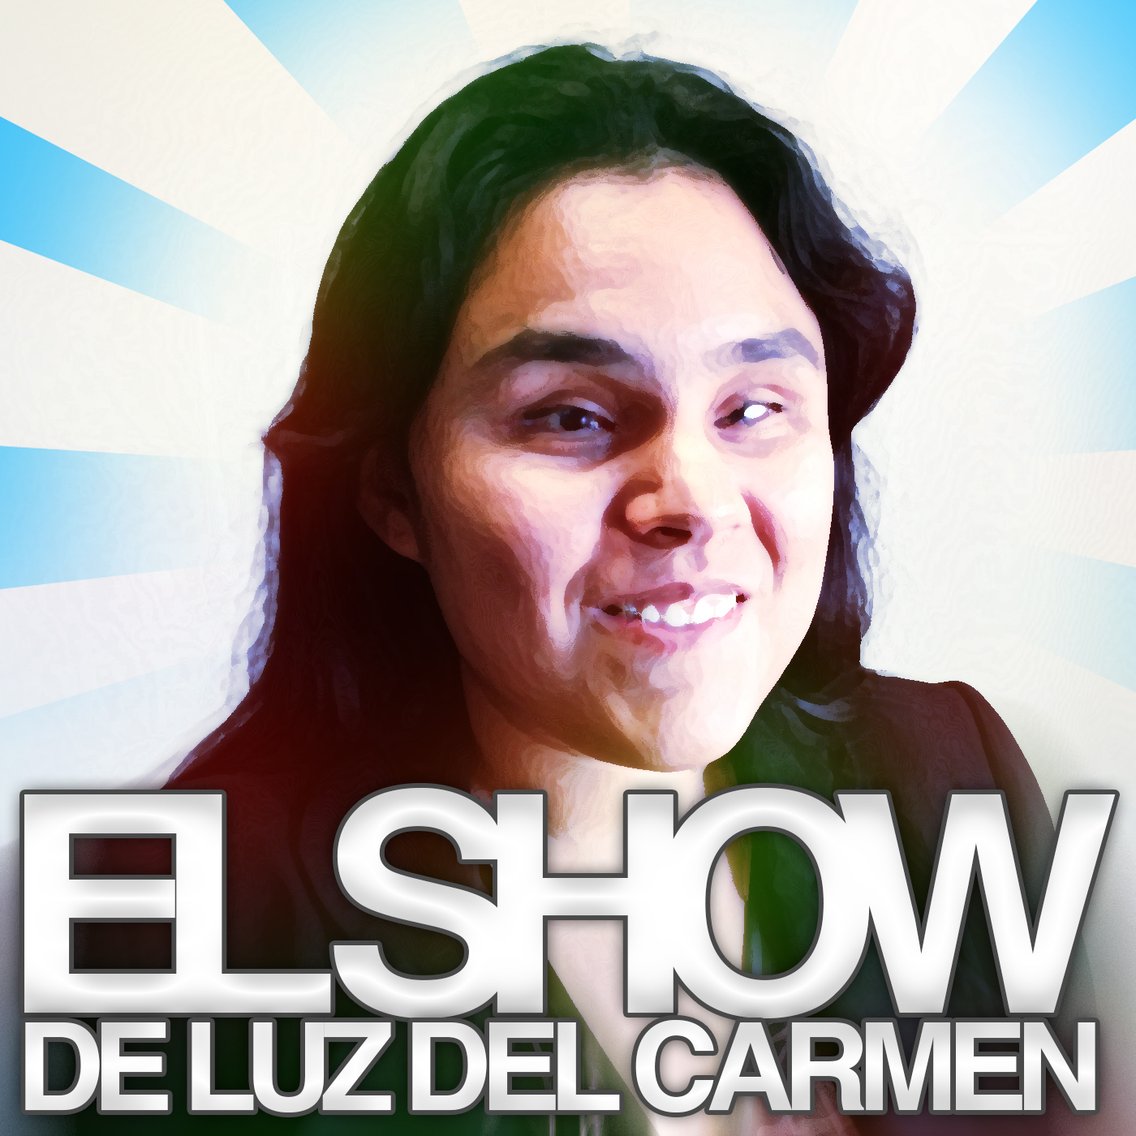 El Show de Luz del Carmen - Cover Image